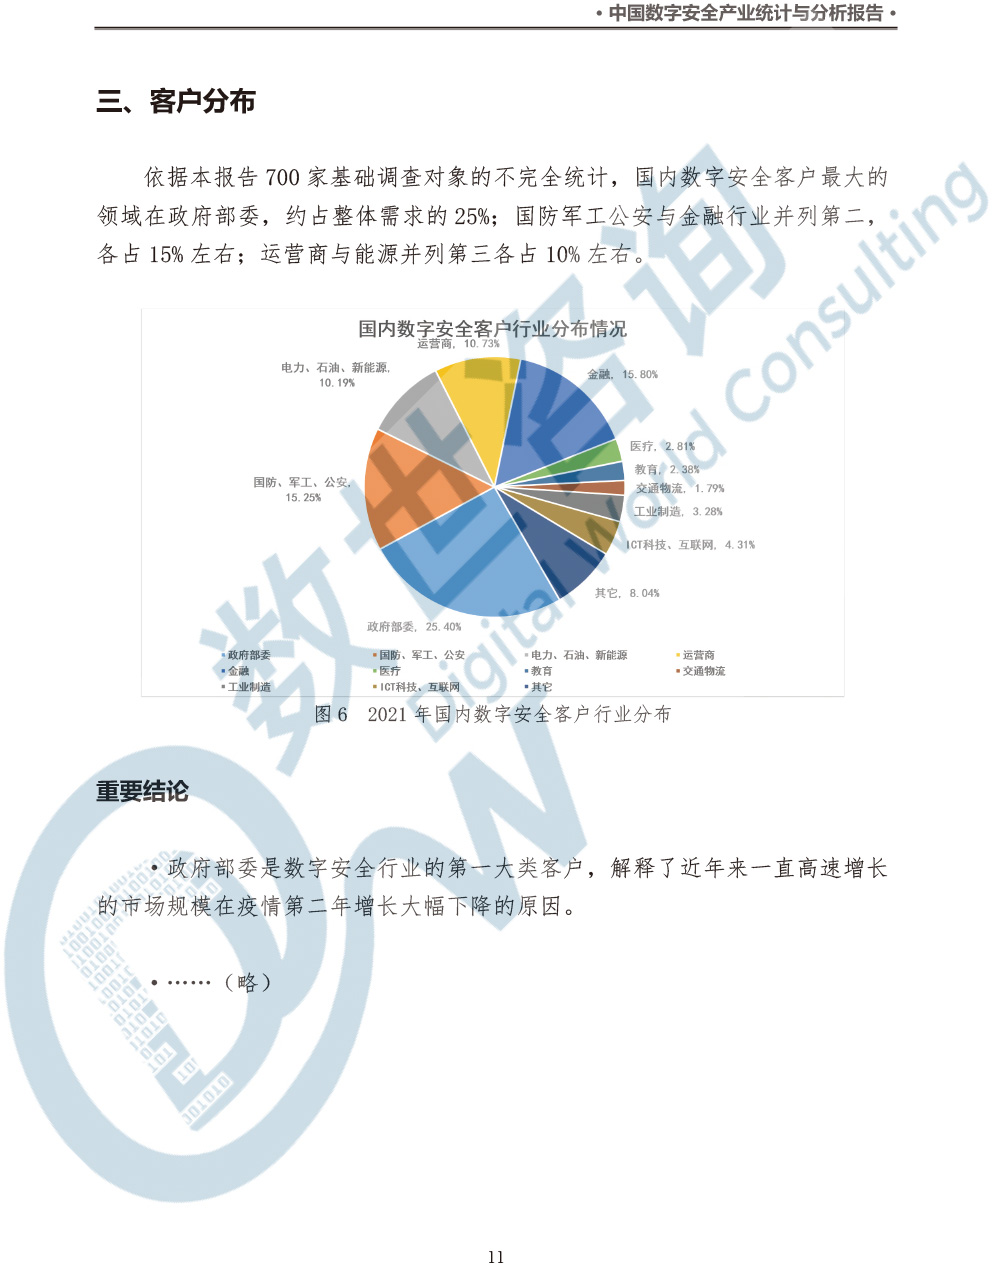 中国数字安全产业统计与分析报告(2022)图-18.jpg